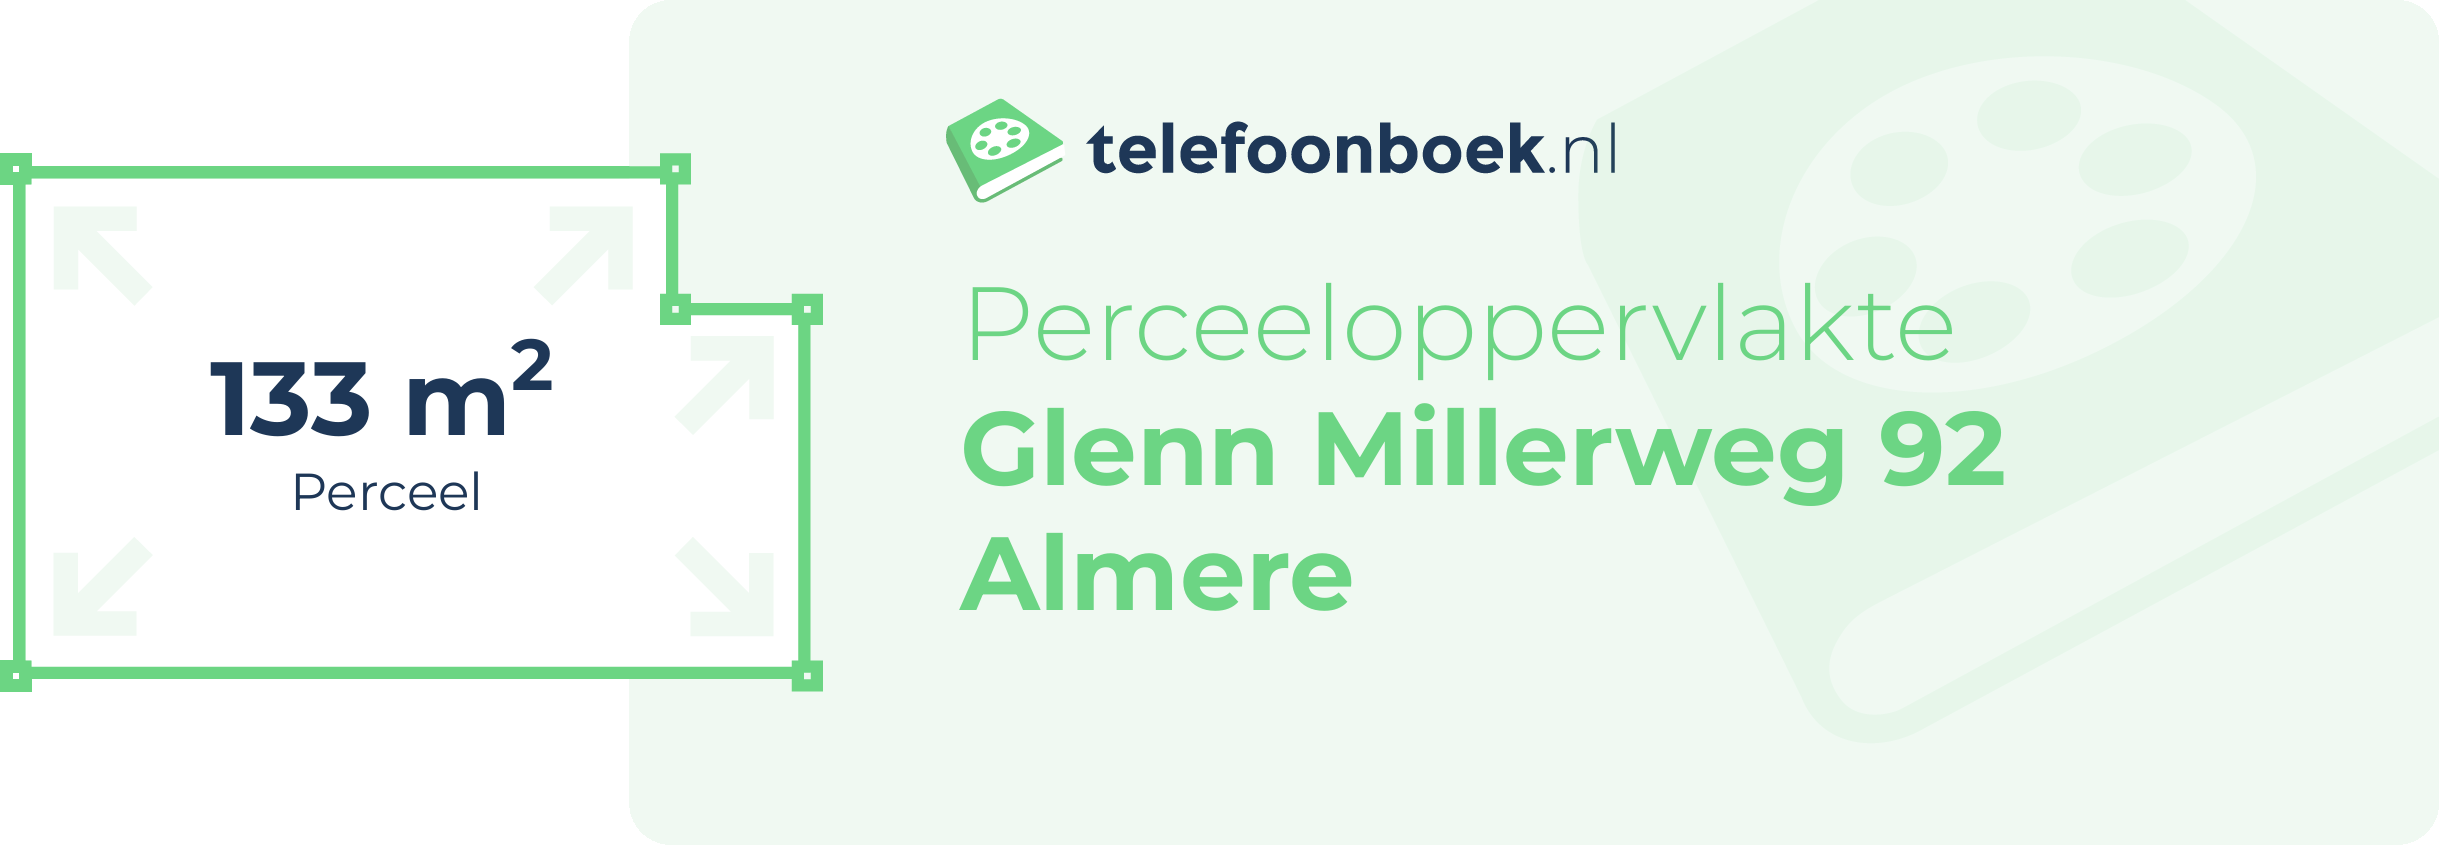 Perceeloppervlakte Glenn Millerweg 92 Almere